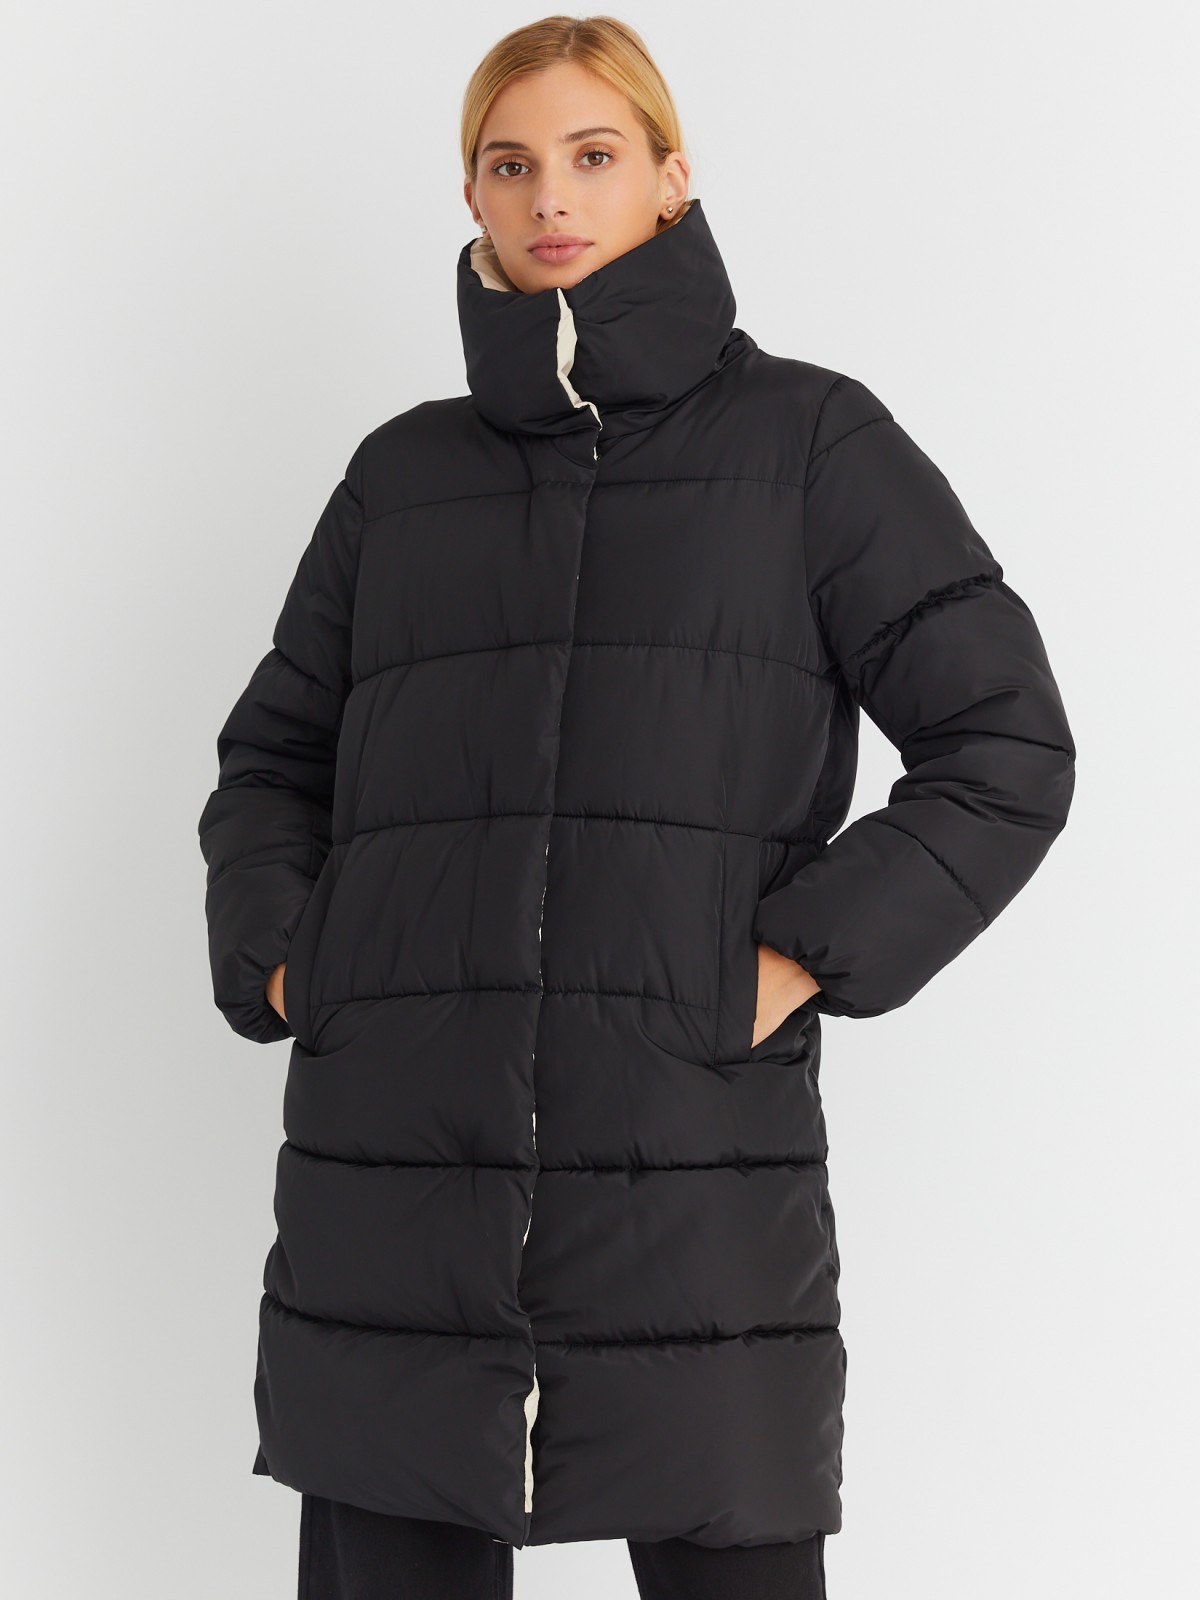 Тёплая стёганая куртка-пальто с высоким воротником 023345202084, цвет ...